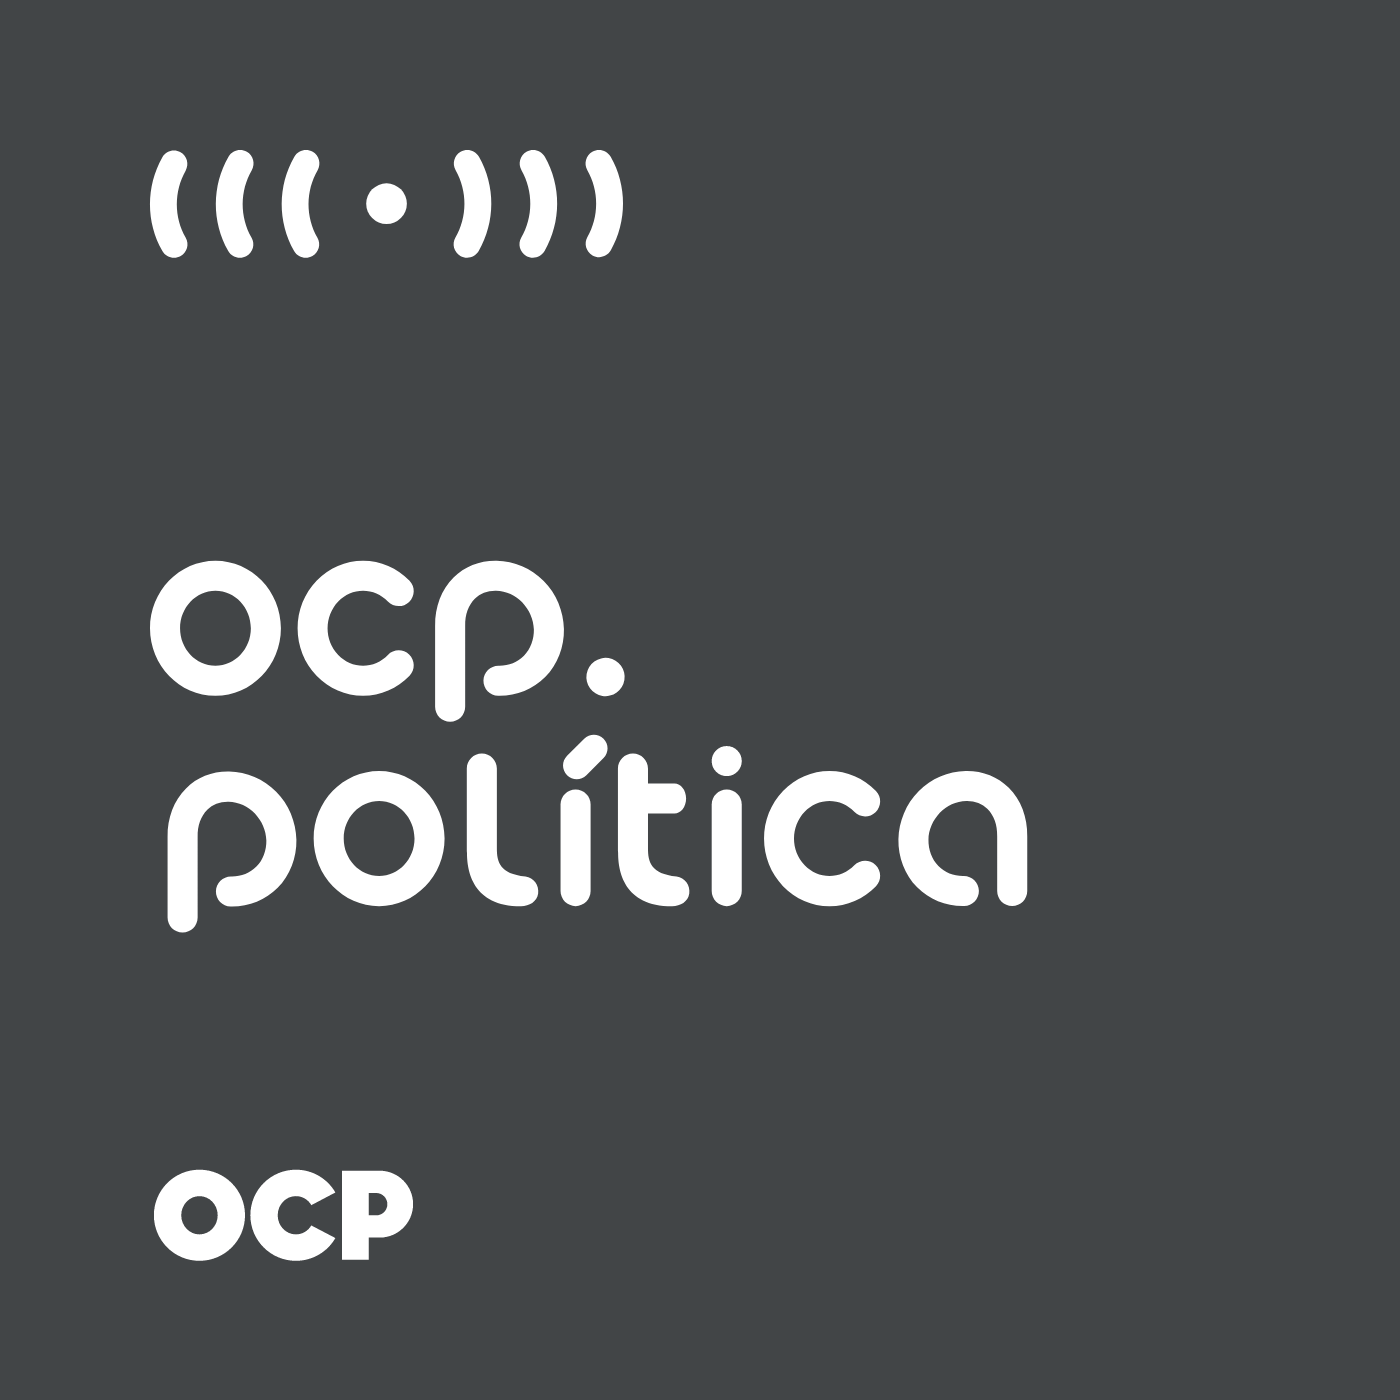 Podcast OCP Política: Entrevista com o Prefeito Antídio Lunelli - parte 03